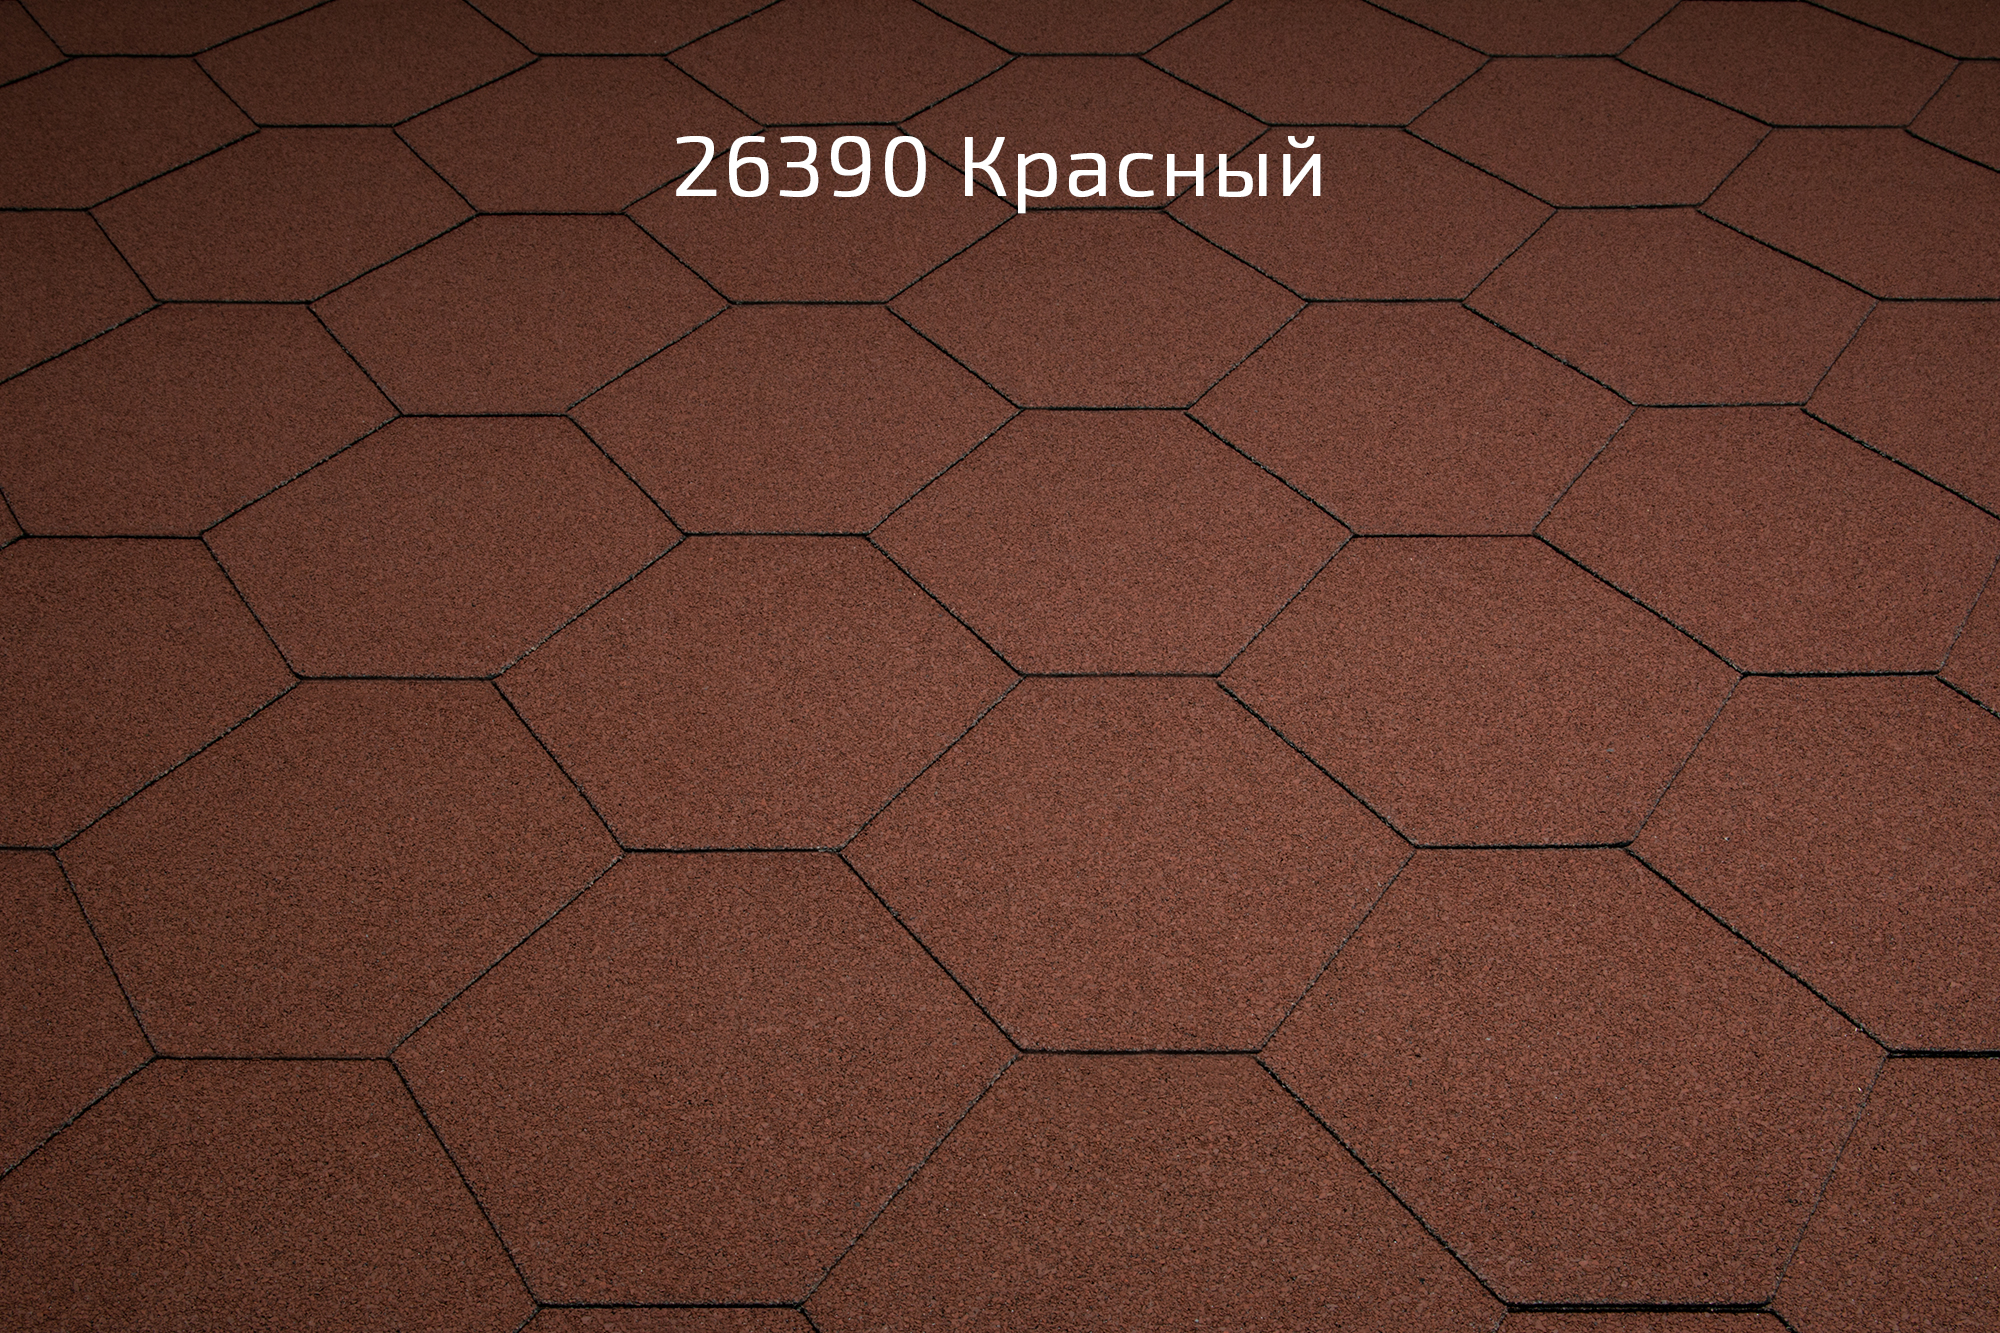 Битумная черепица Kerabit K+ «Тройка» однотонная 26390 Красный